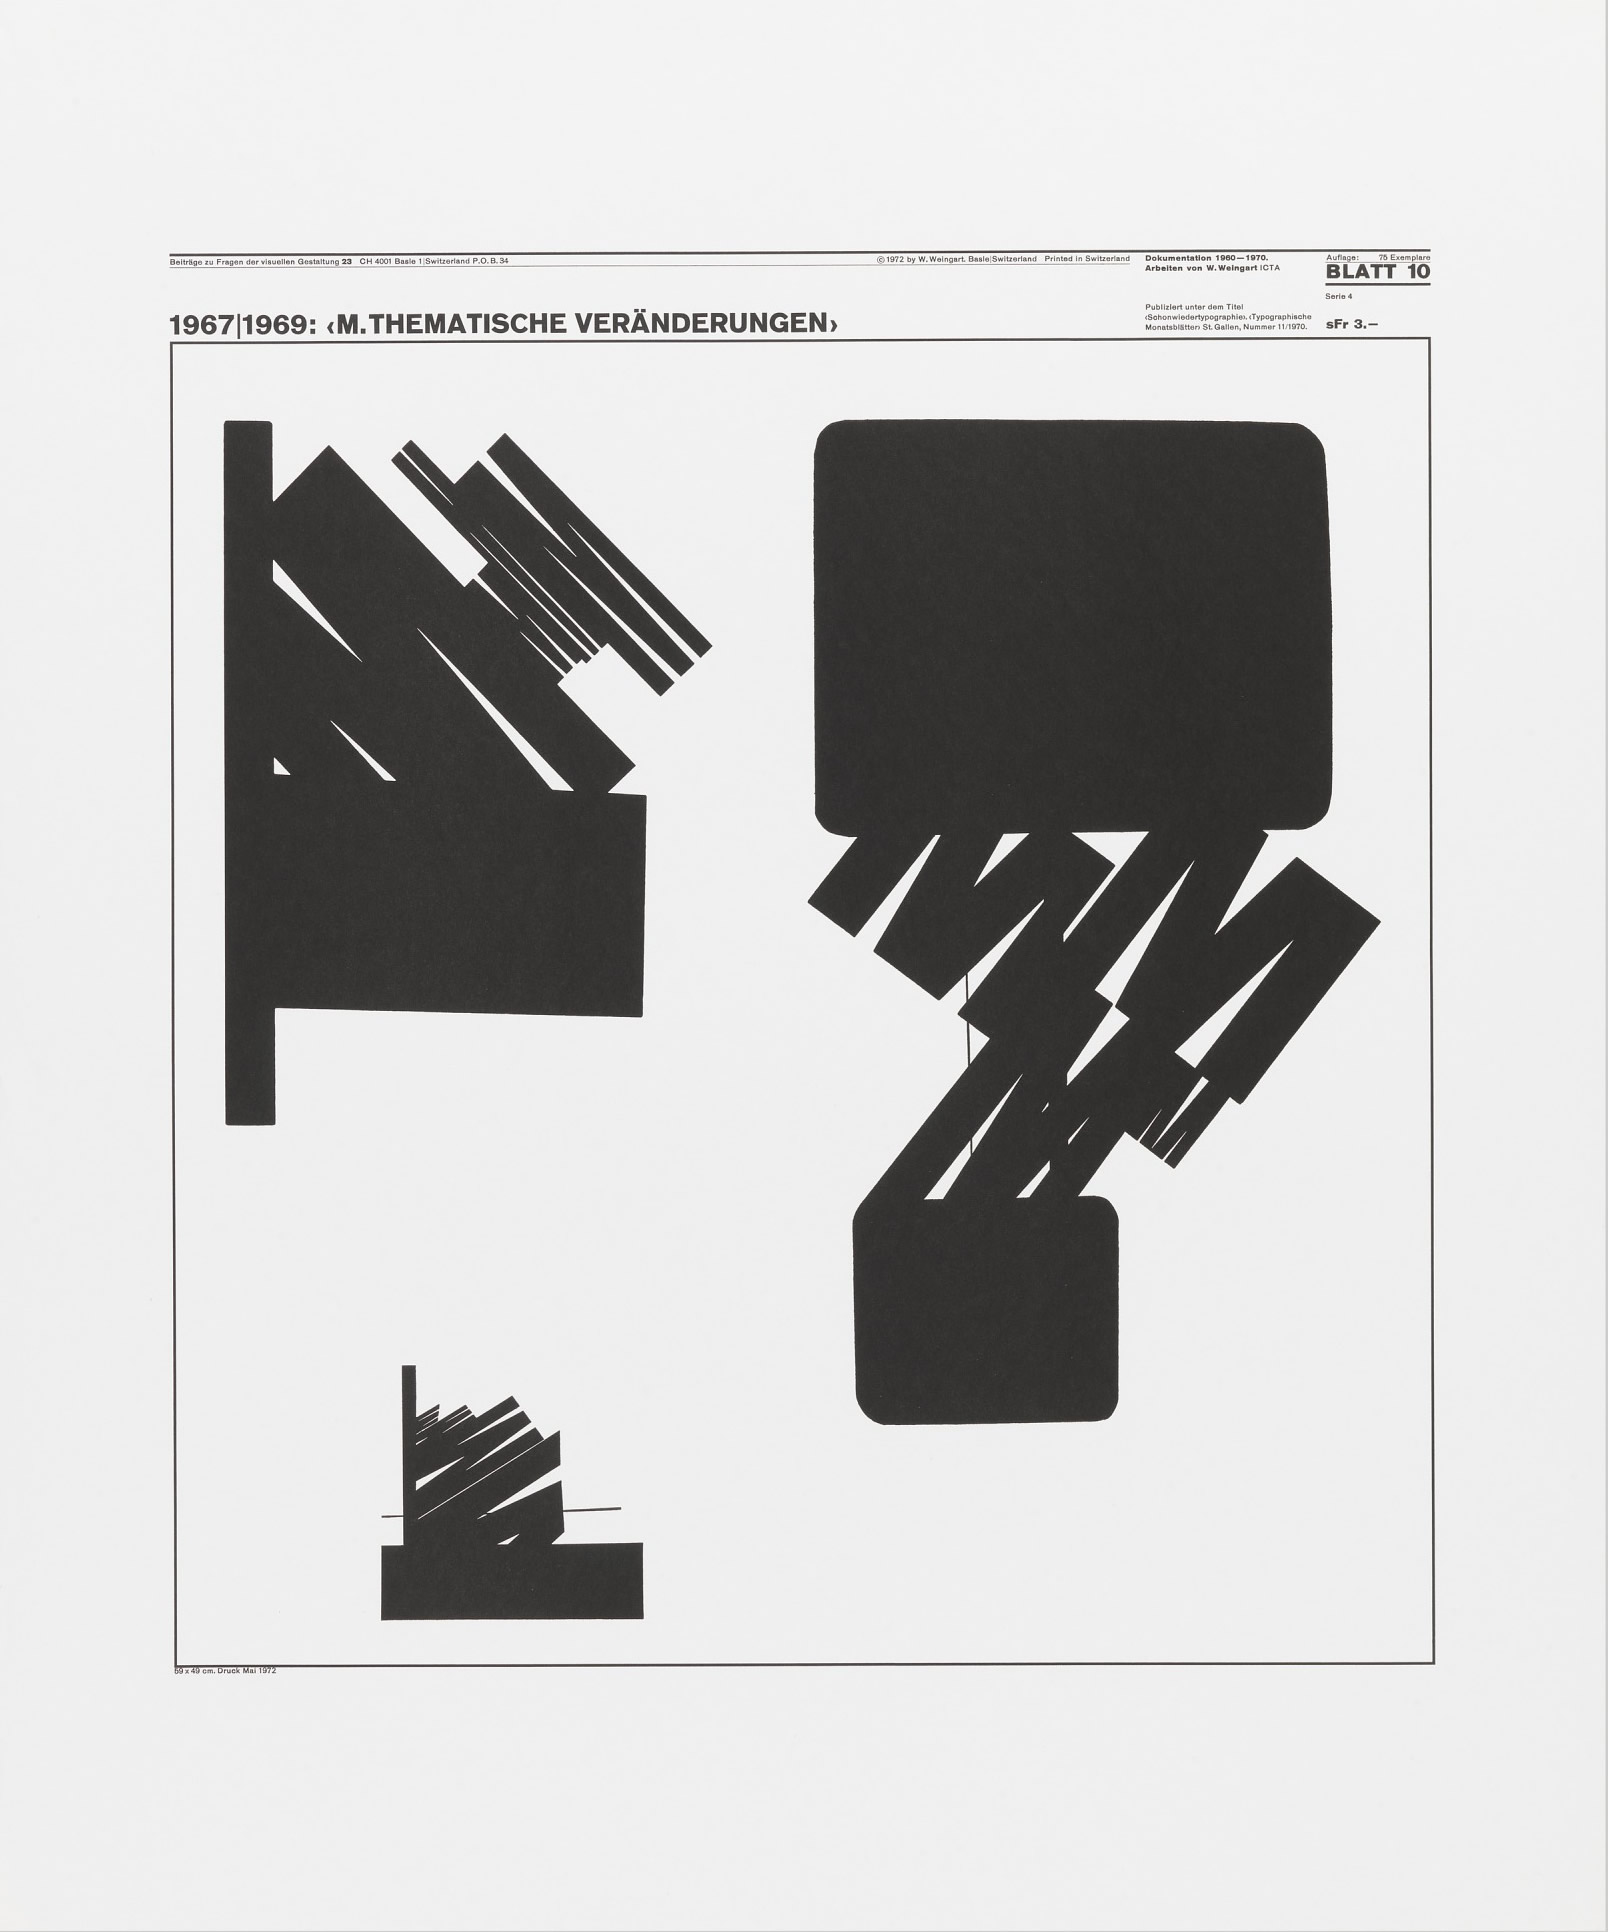 Wolfgang Weingart: Beiträge zu Fragen der visuellen Gestaltung 23, Blatt 10 from the portfolio Dokumentation 1960—1970, Arbeiten von W. Weingart, Designed 1967-69. Lithograph. (58.9 x 49 cm)